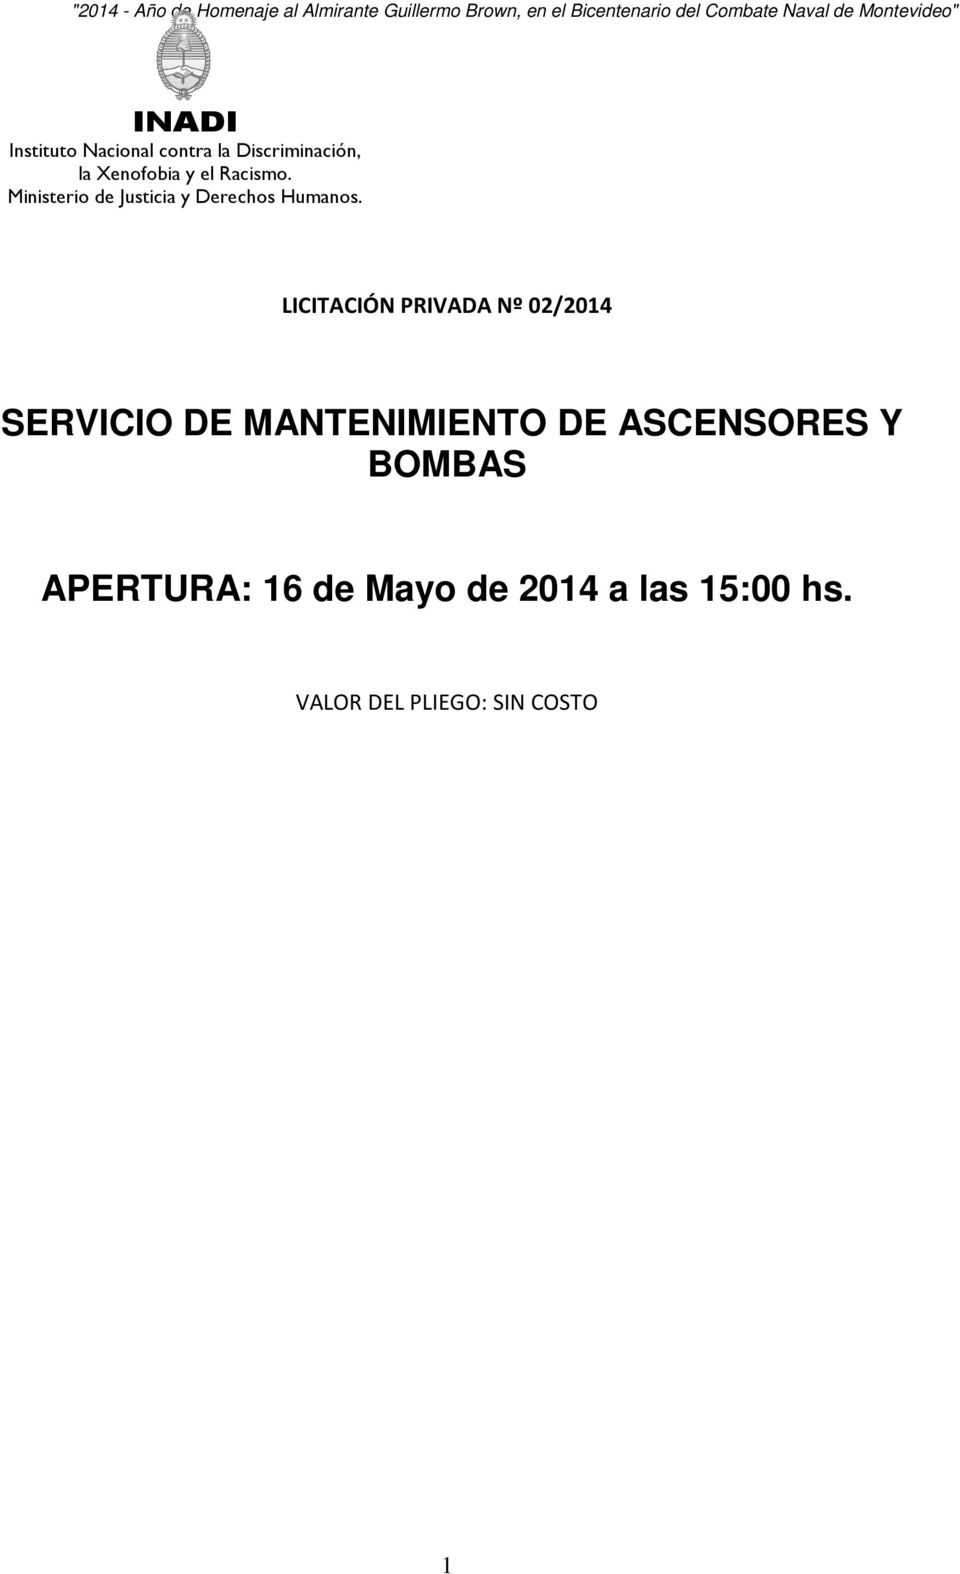 BOMBAS APERTURA: 16 de Mayo de 2014 a